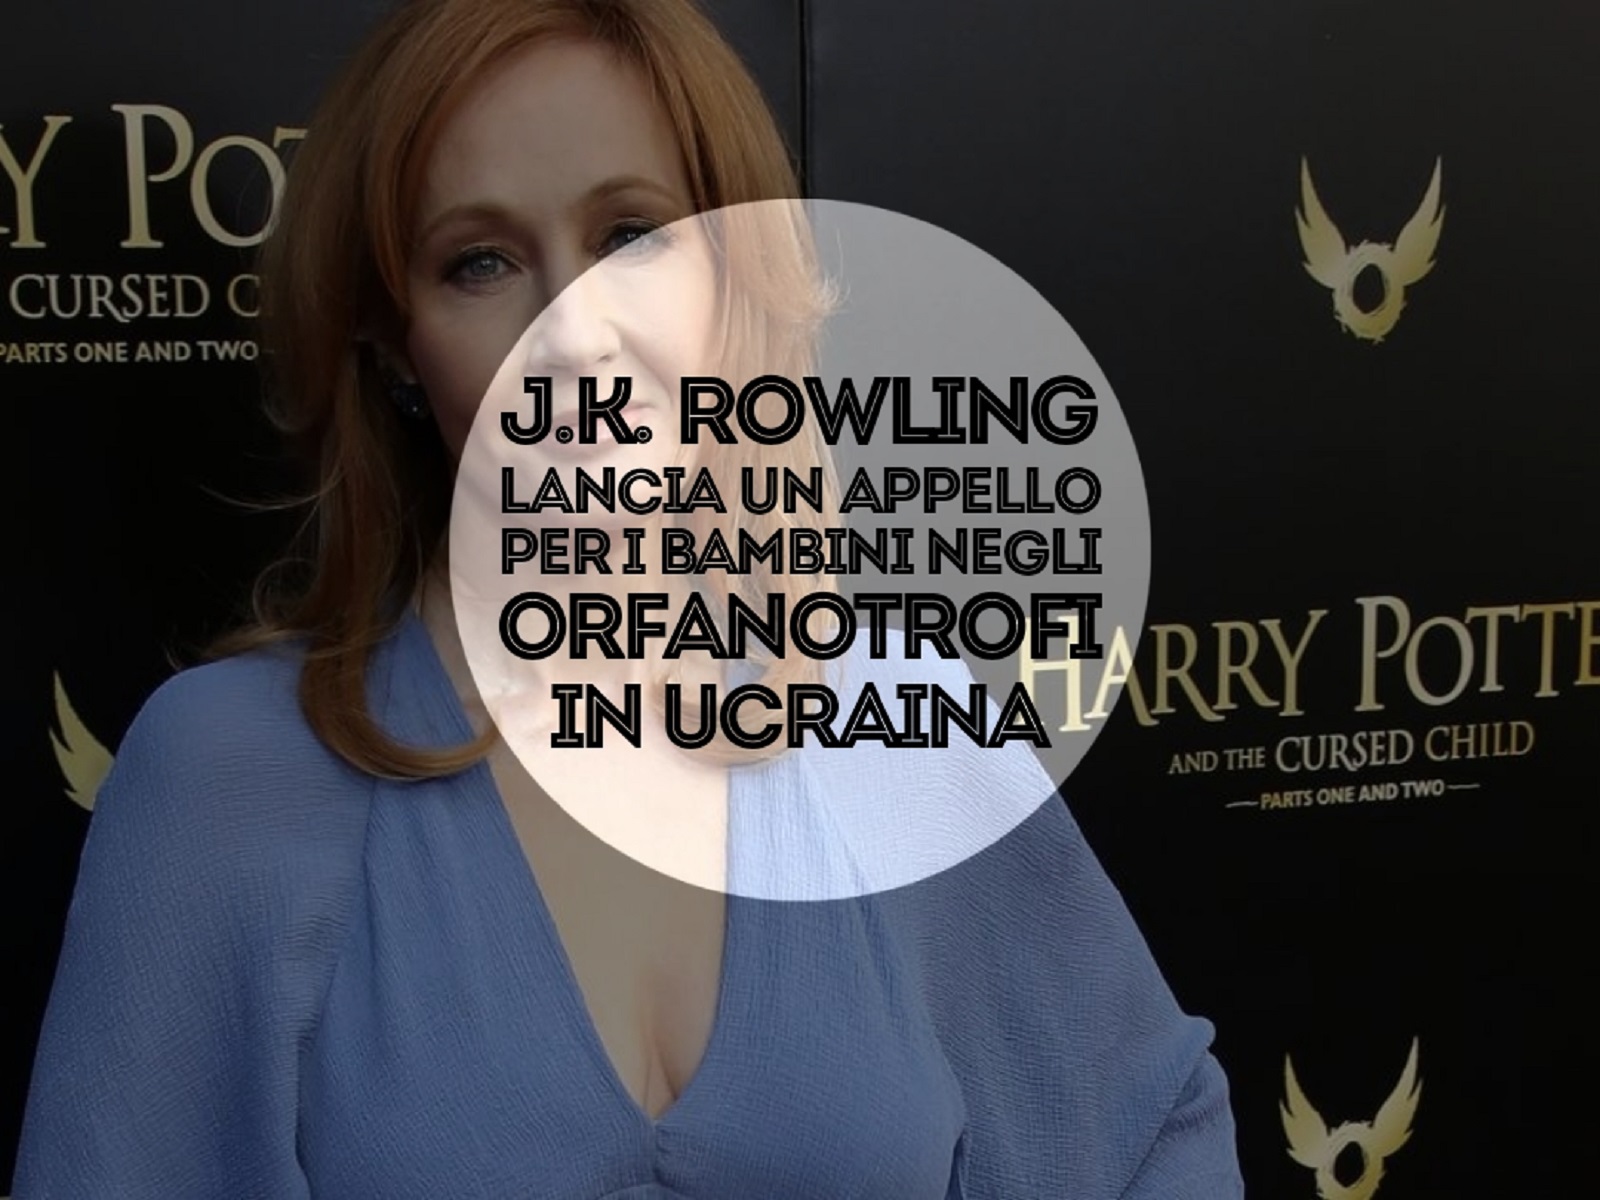 J.k. Rowling lancia un appello per i bambini degli orfanotrofi in Ucraina